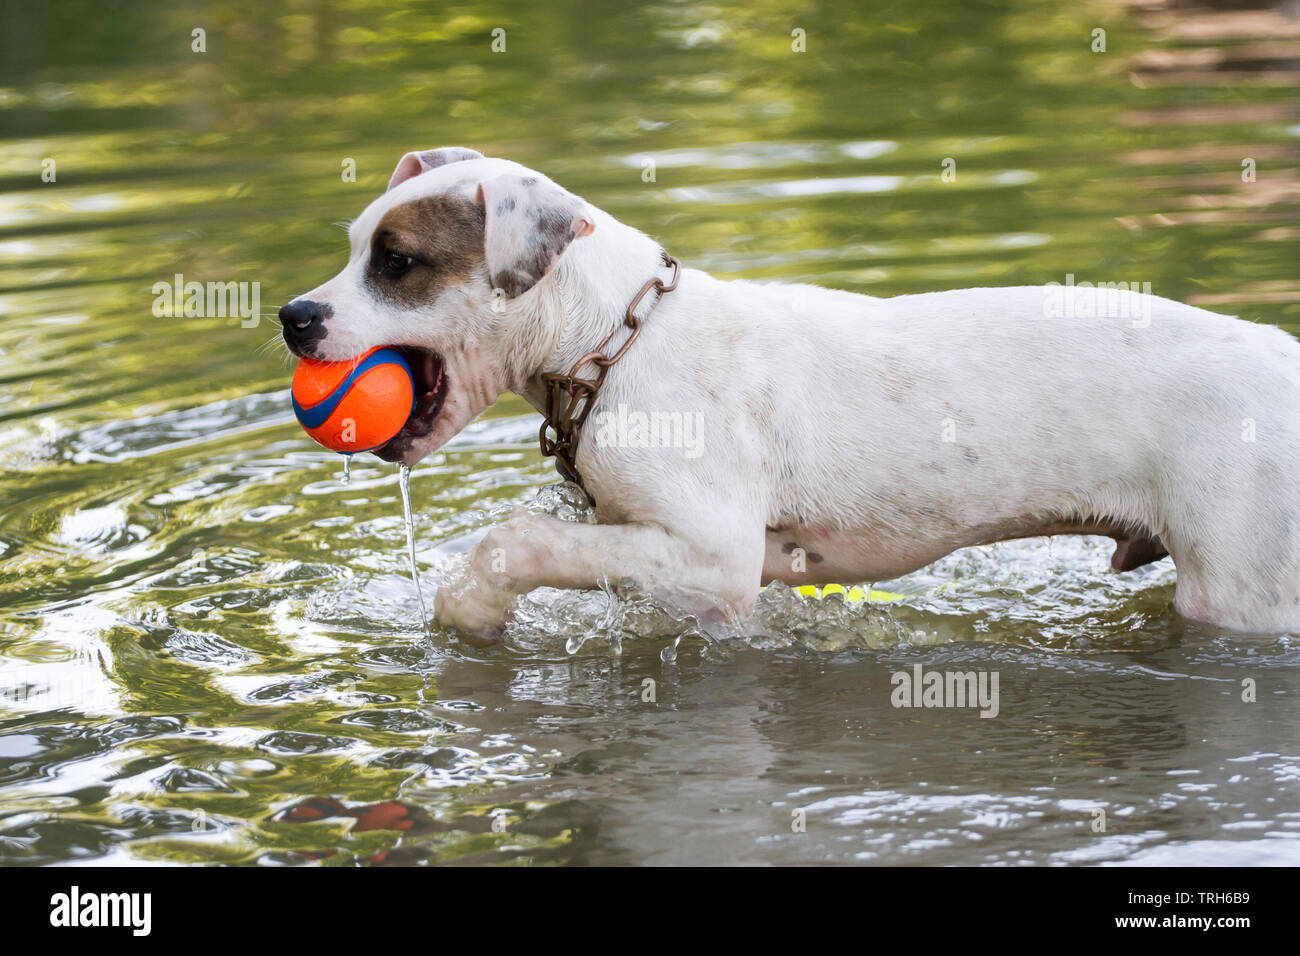 Ein Welpe vom Typ White Bulldog, der einen Ball im Wasser holt Stockfoto